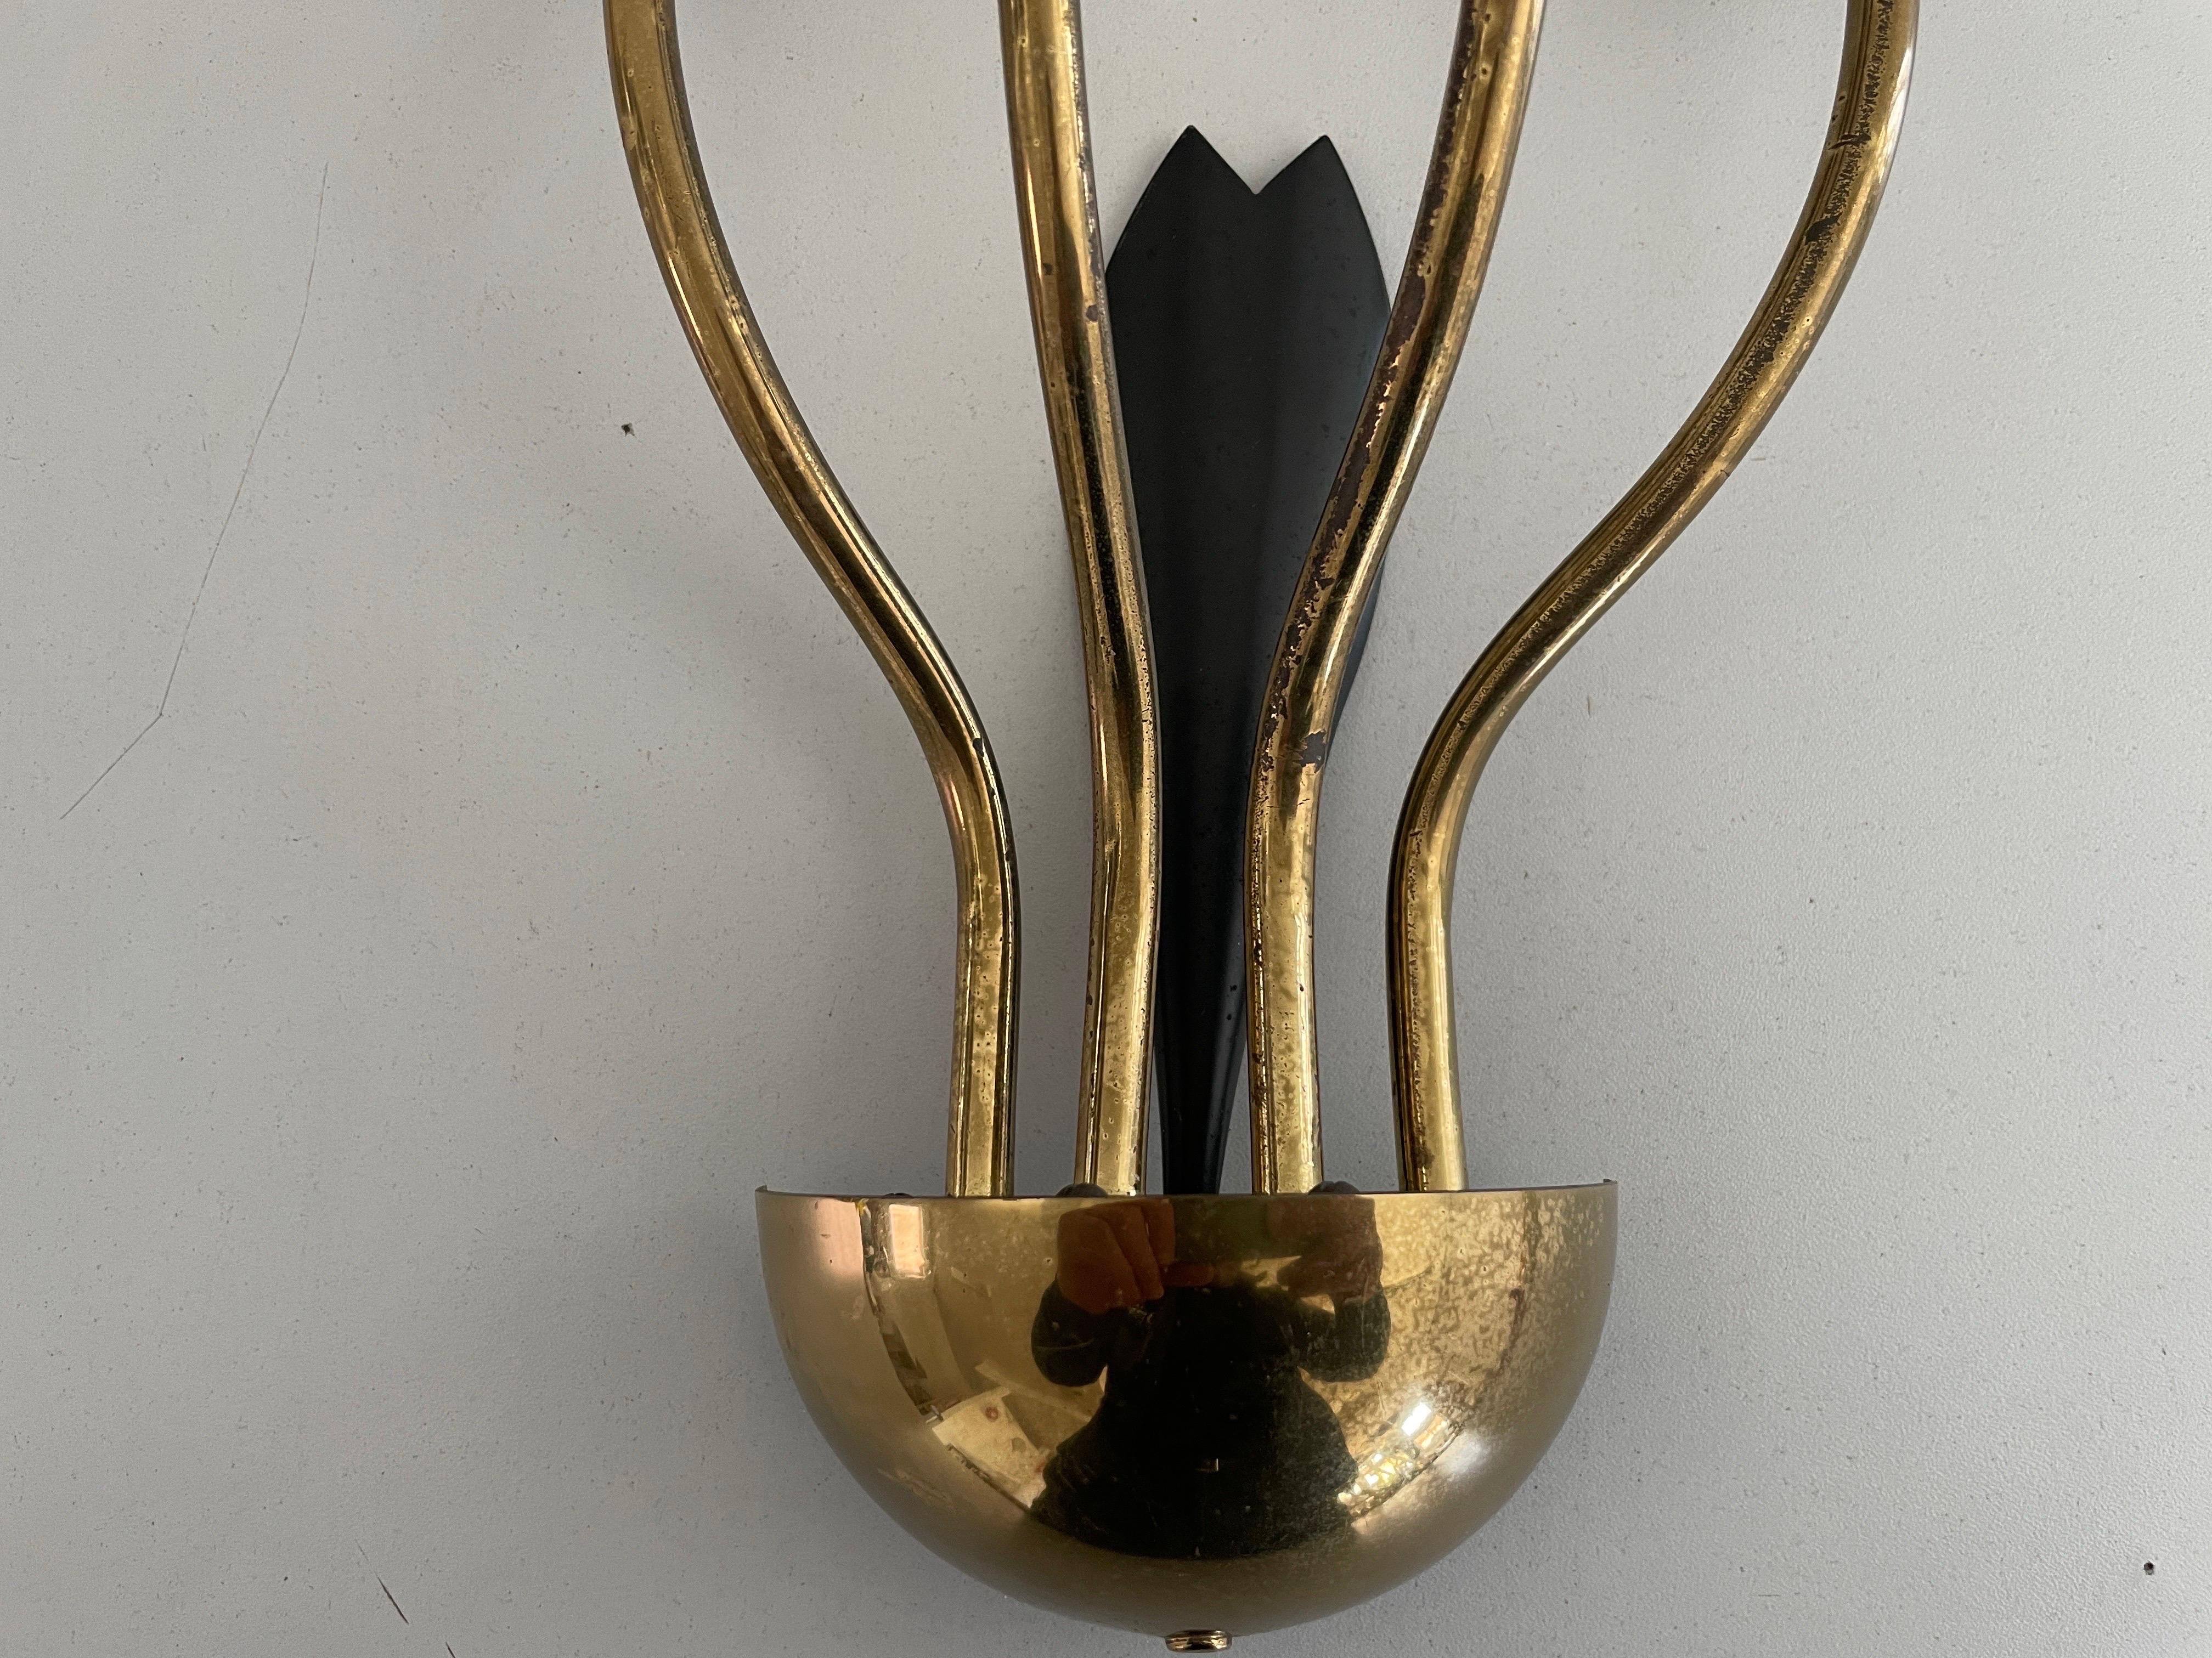 4-armed Flower Design Brass Sputnik Pair of Sconces, 1950s, Germany For Sale 1